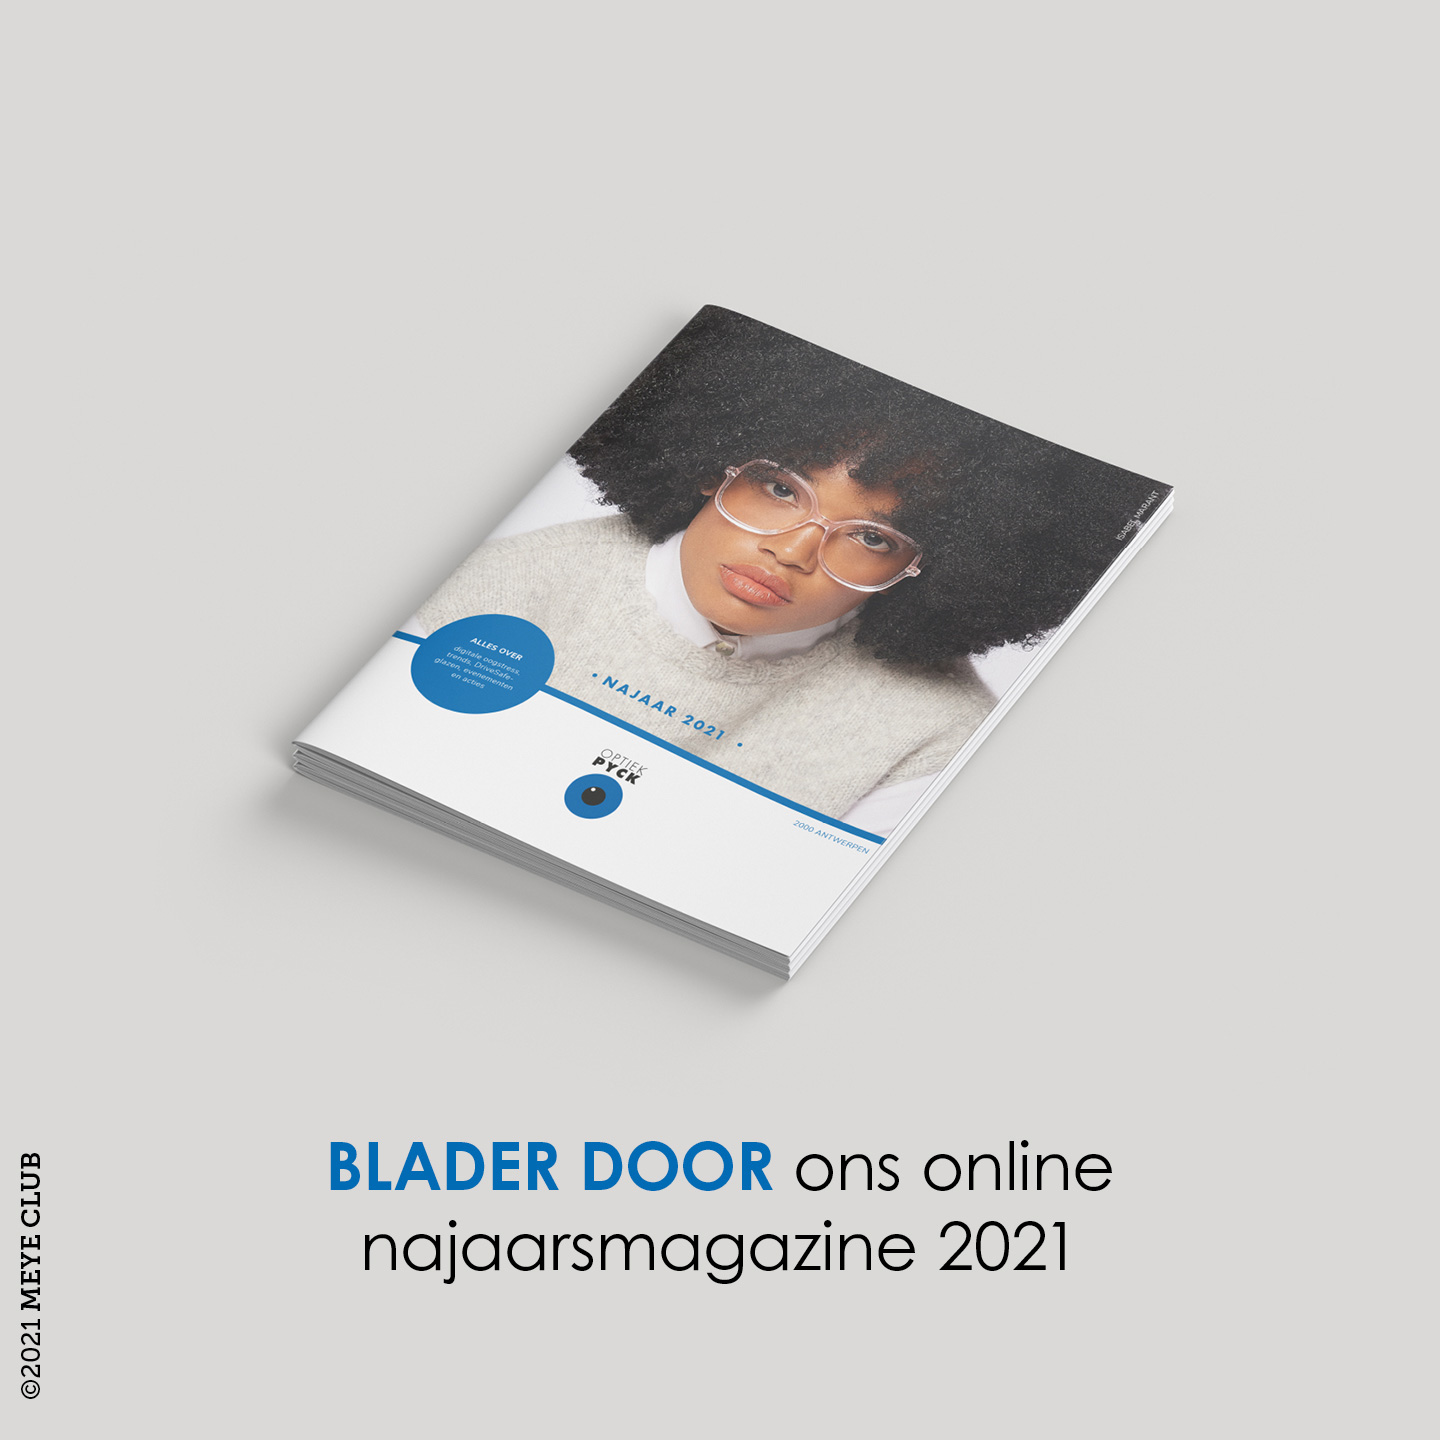 Online najaarsmagazine 2021